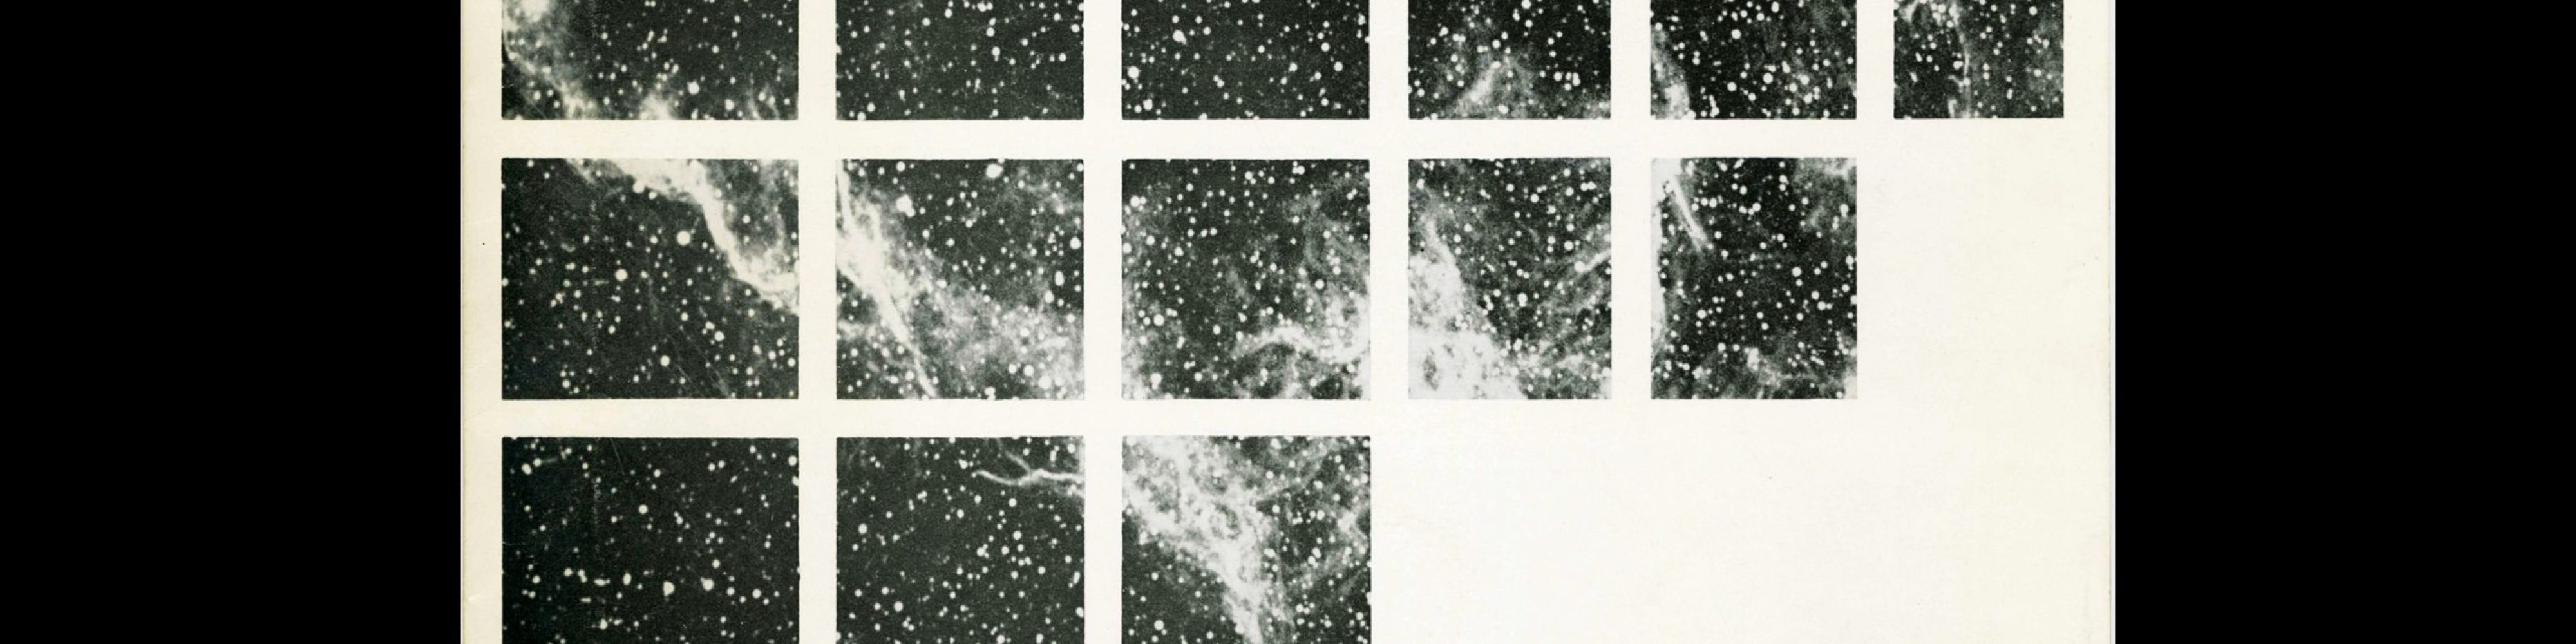 Univers Specimen, Deberny & Peignot, c 1960